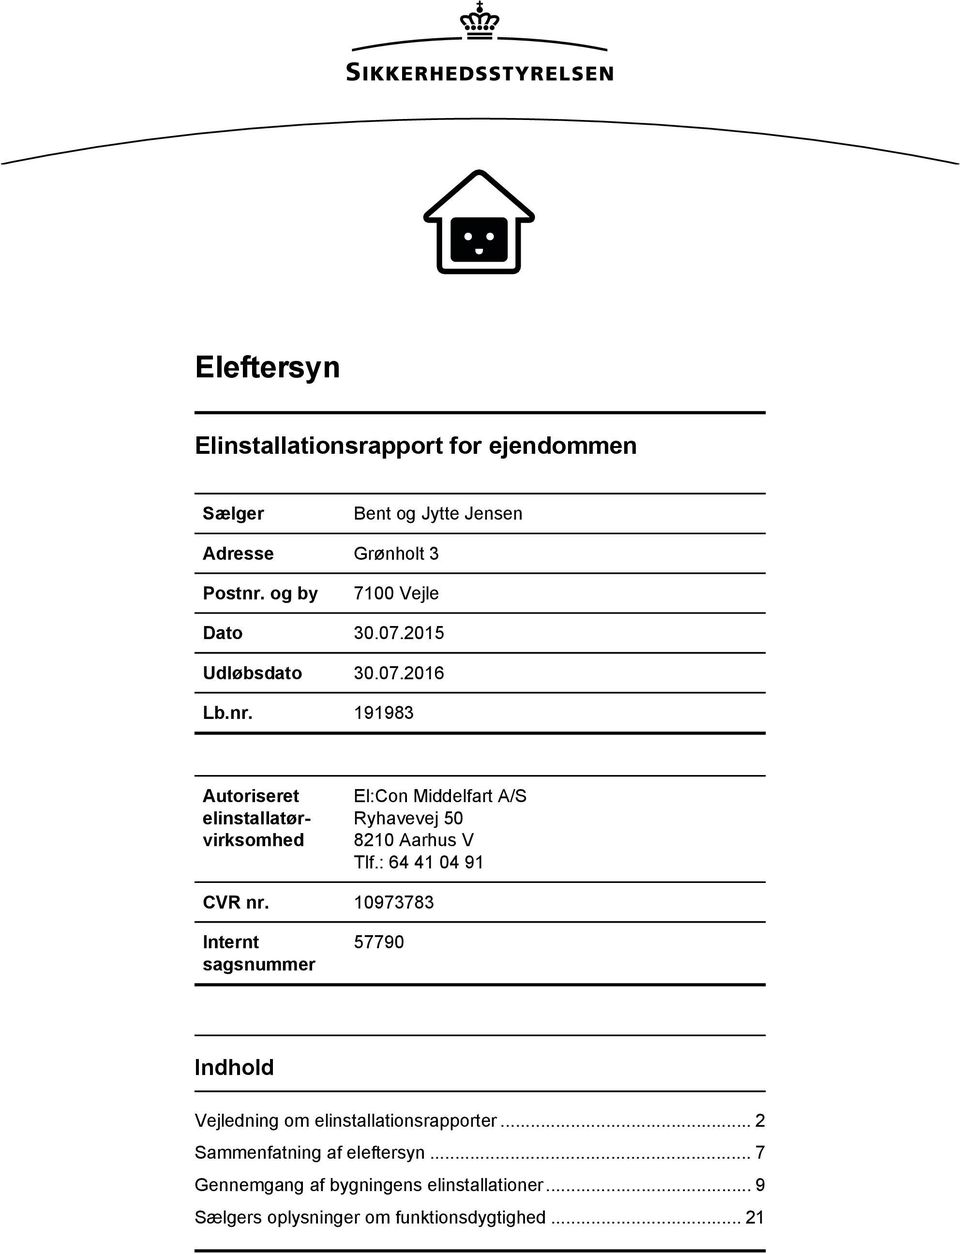 2016 Autoriseret elinstallatørvirksomhed El:Con Middelfart A/S Ryhavevej 50 8210 Aarhus V Tlf.